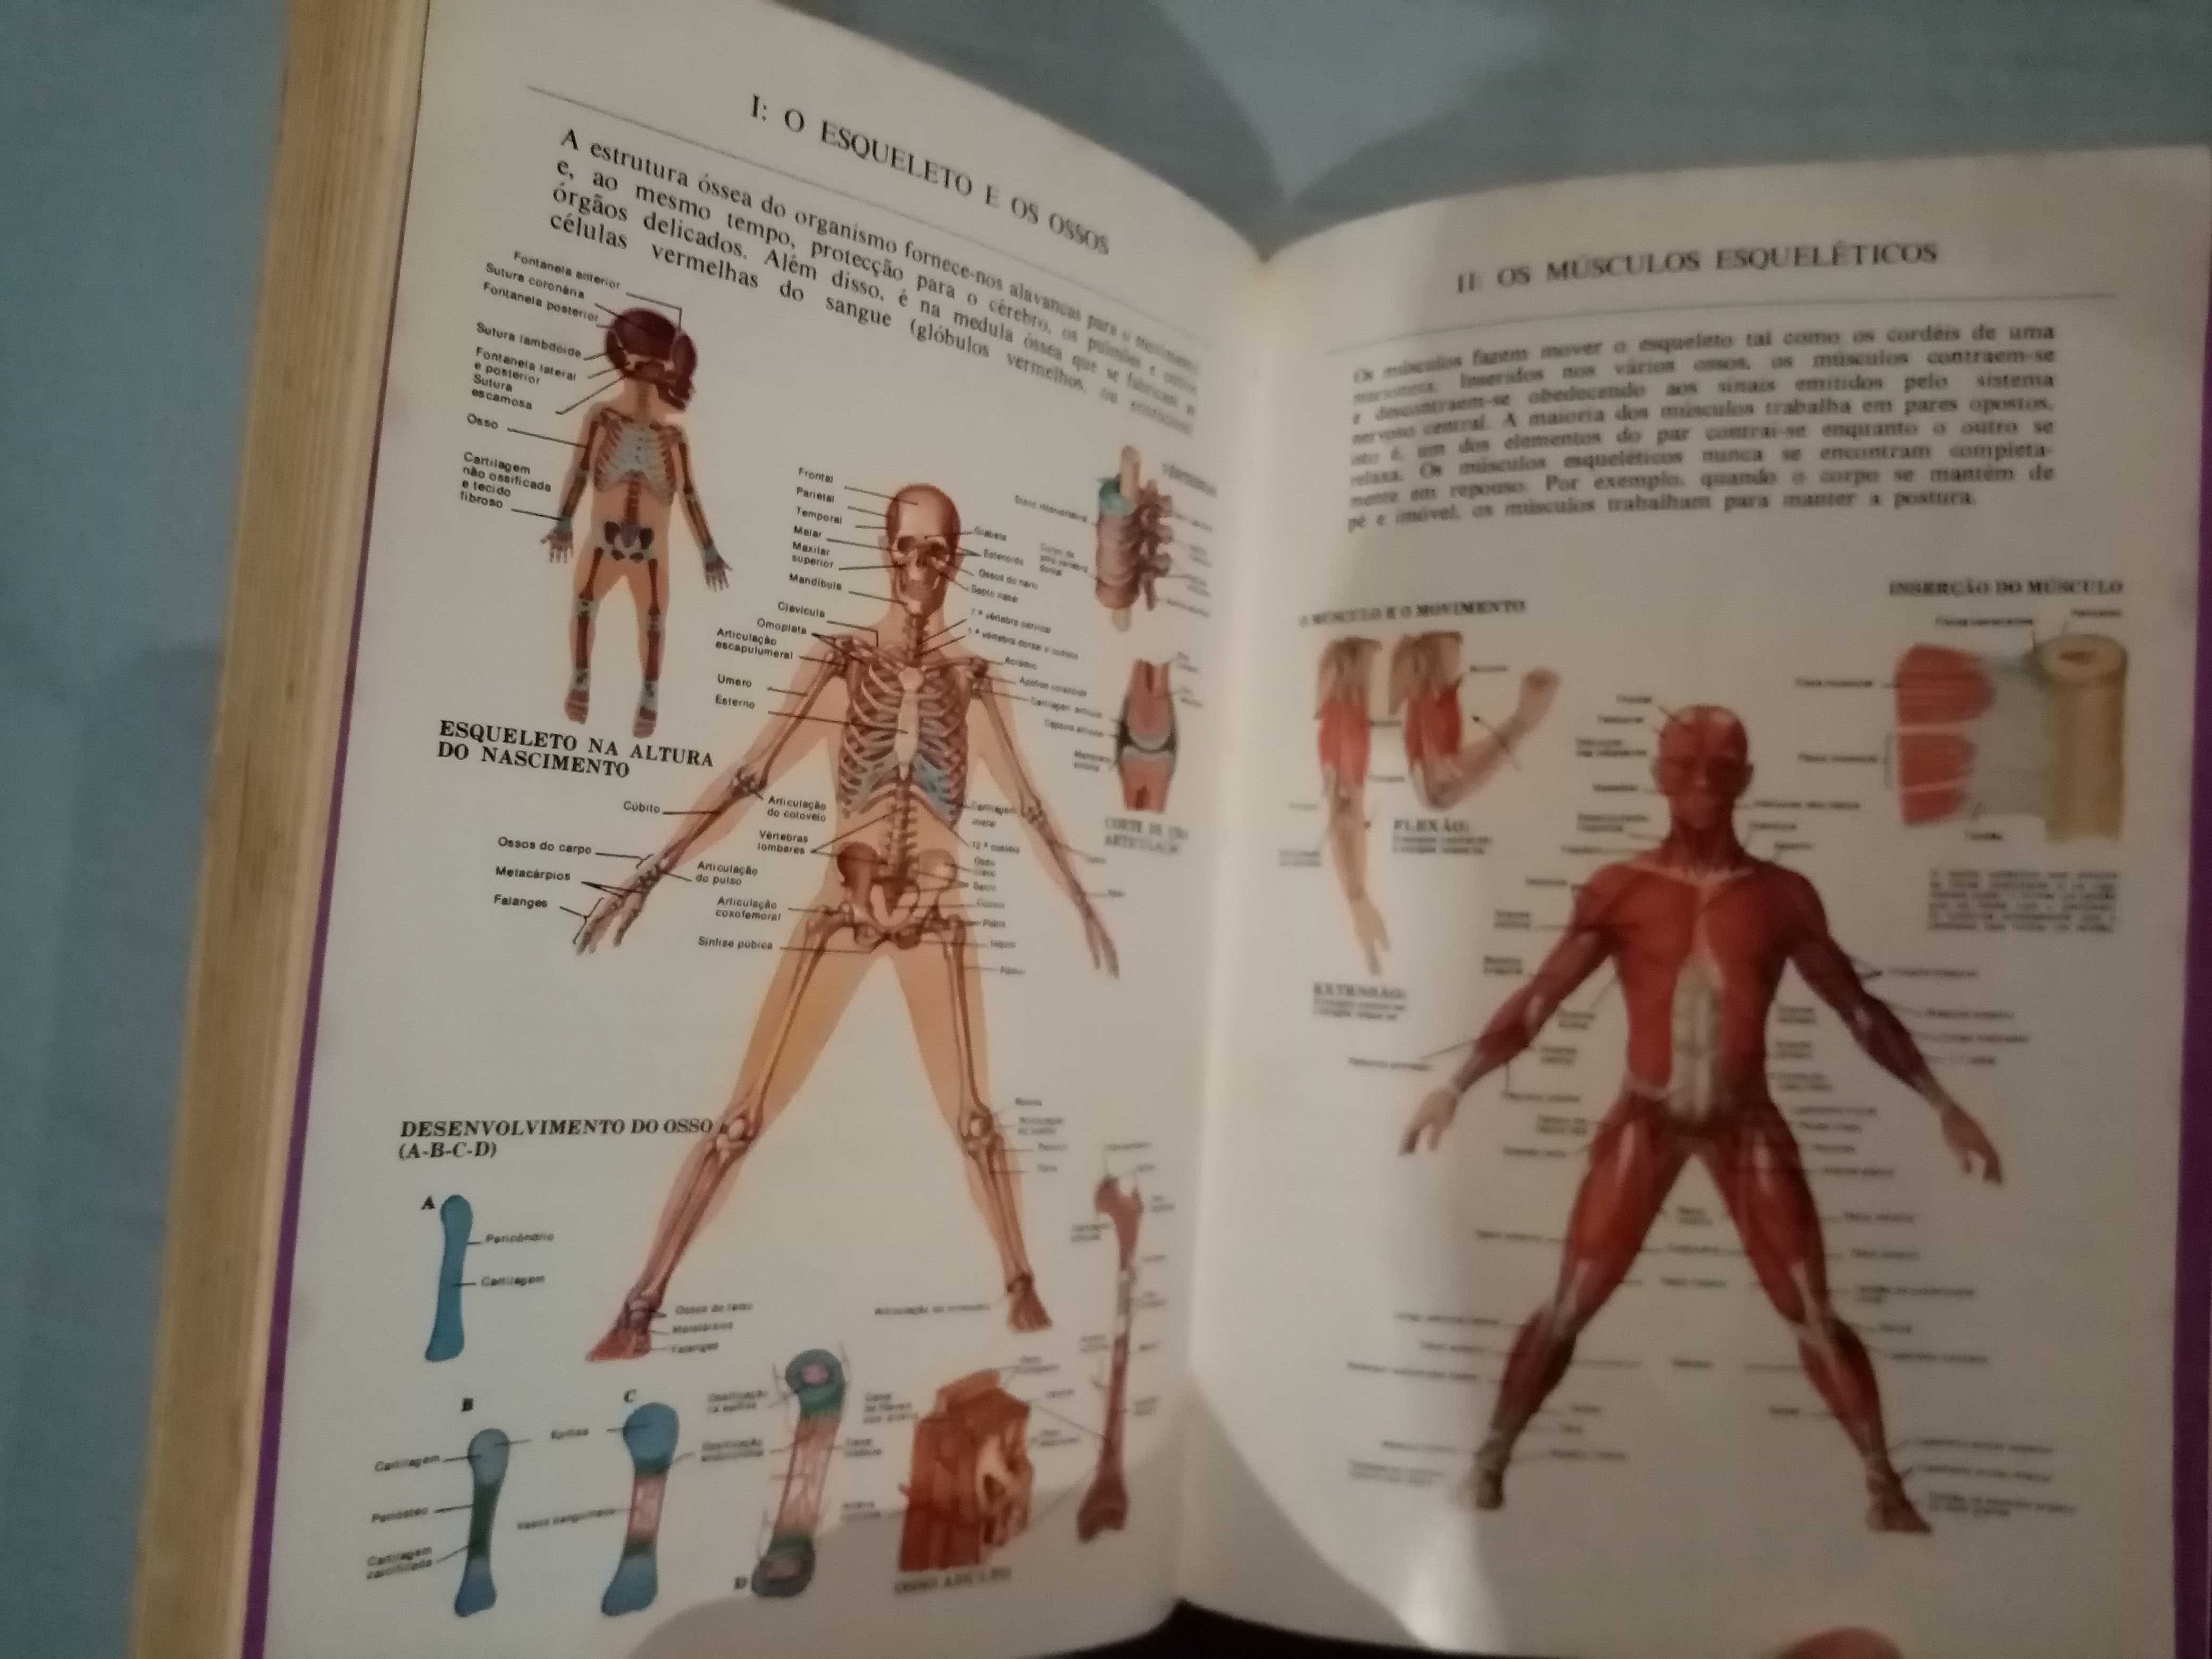 O Grande Livro da Saúde Enciclopédia Médica do Lar